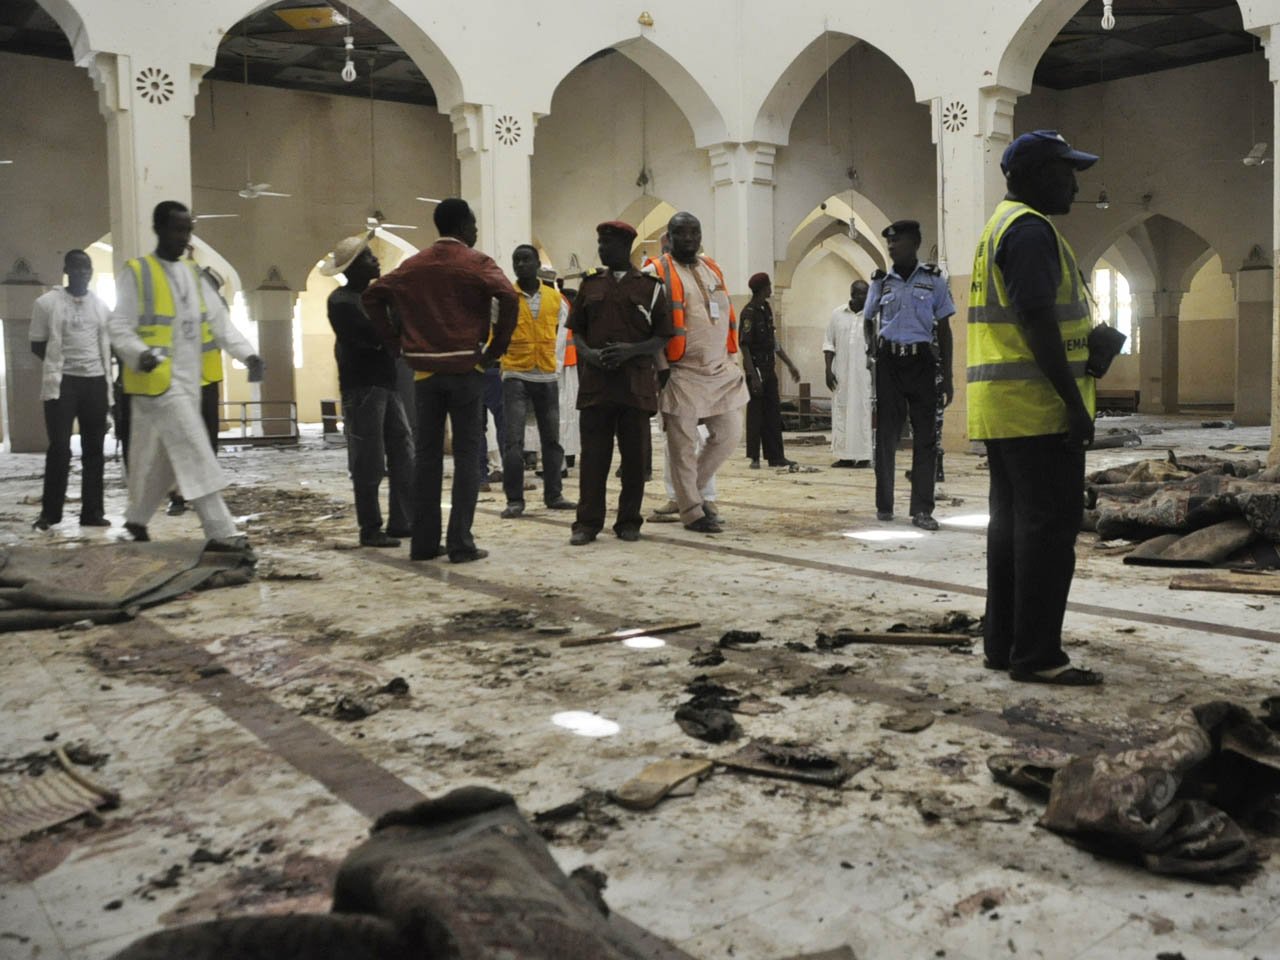 बन्दुकधारीहरुले मस्जिदमा हमला गरी पाँचको हत्या, १८ जना अपहरित